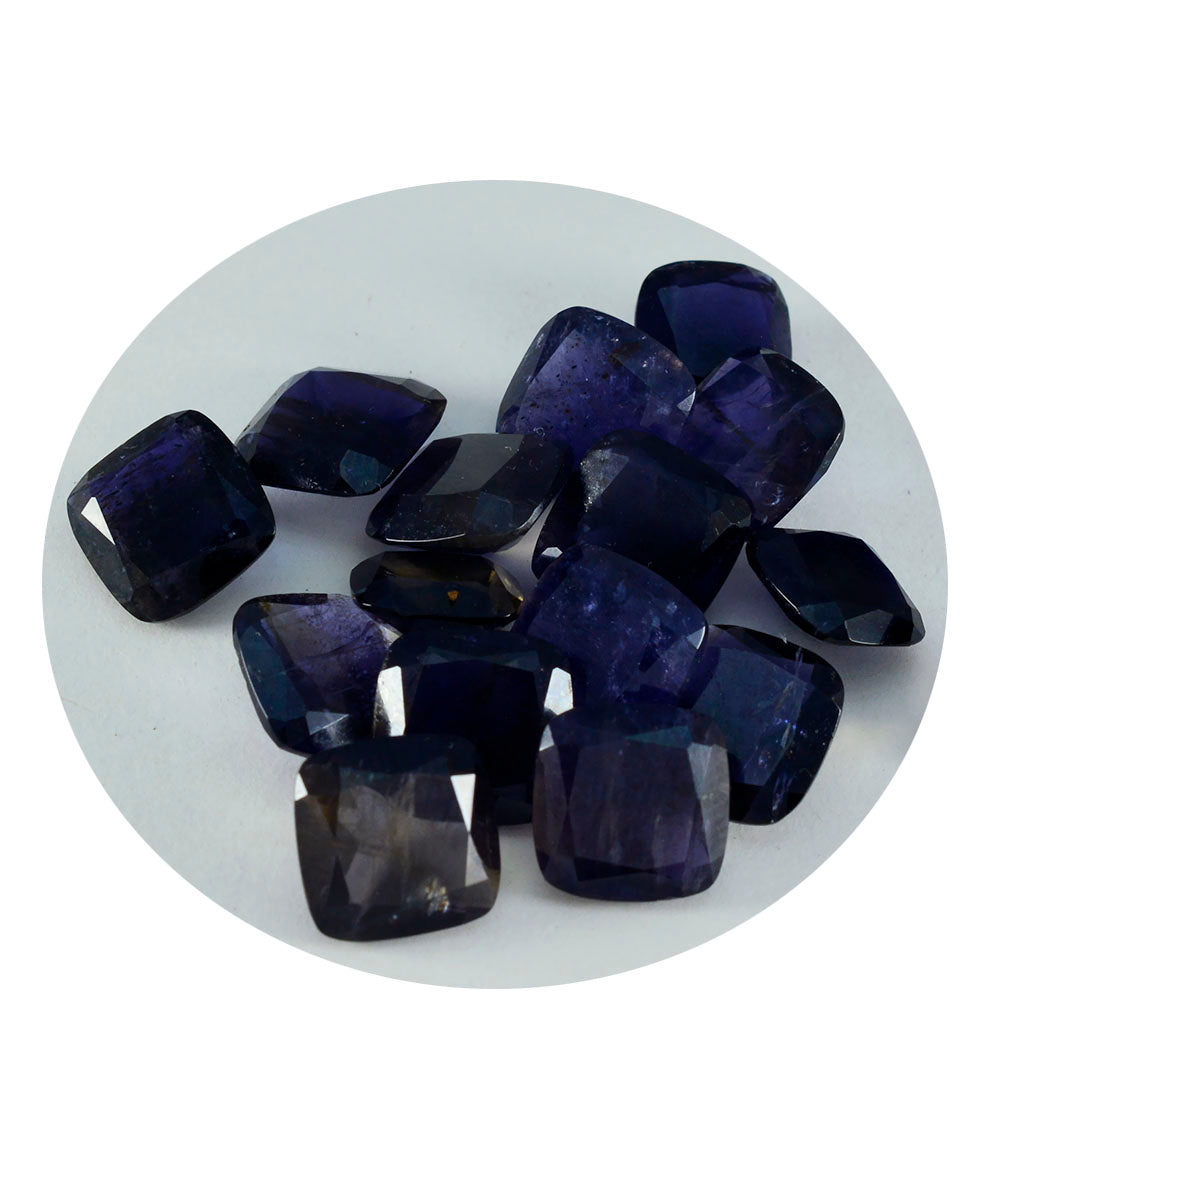 riyogems 1 шт. синий иолит граненый 11x11 мм в форме подушки, отличное качество, свободный драгоценный камень